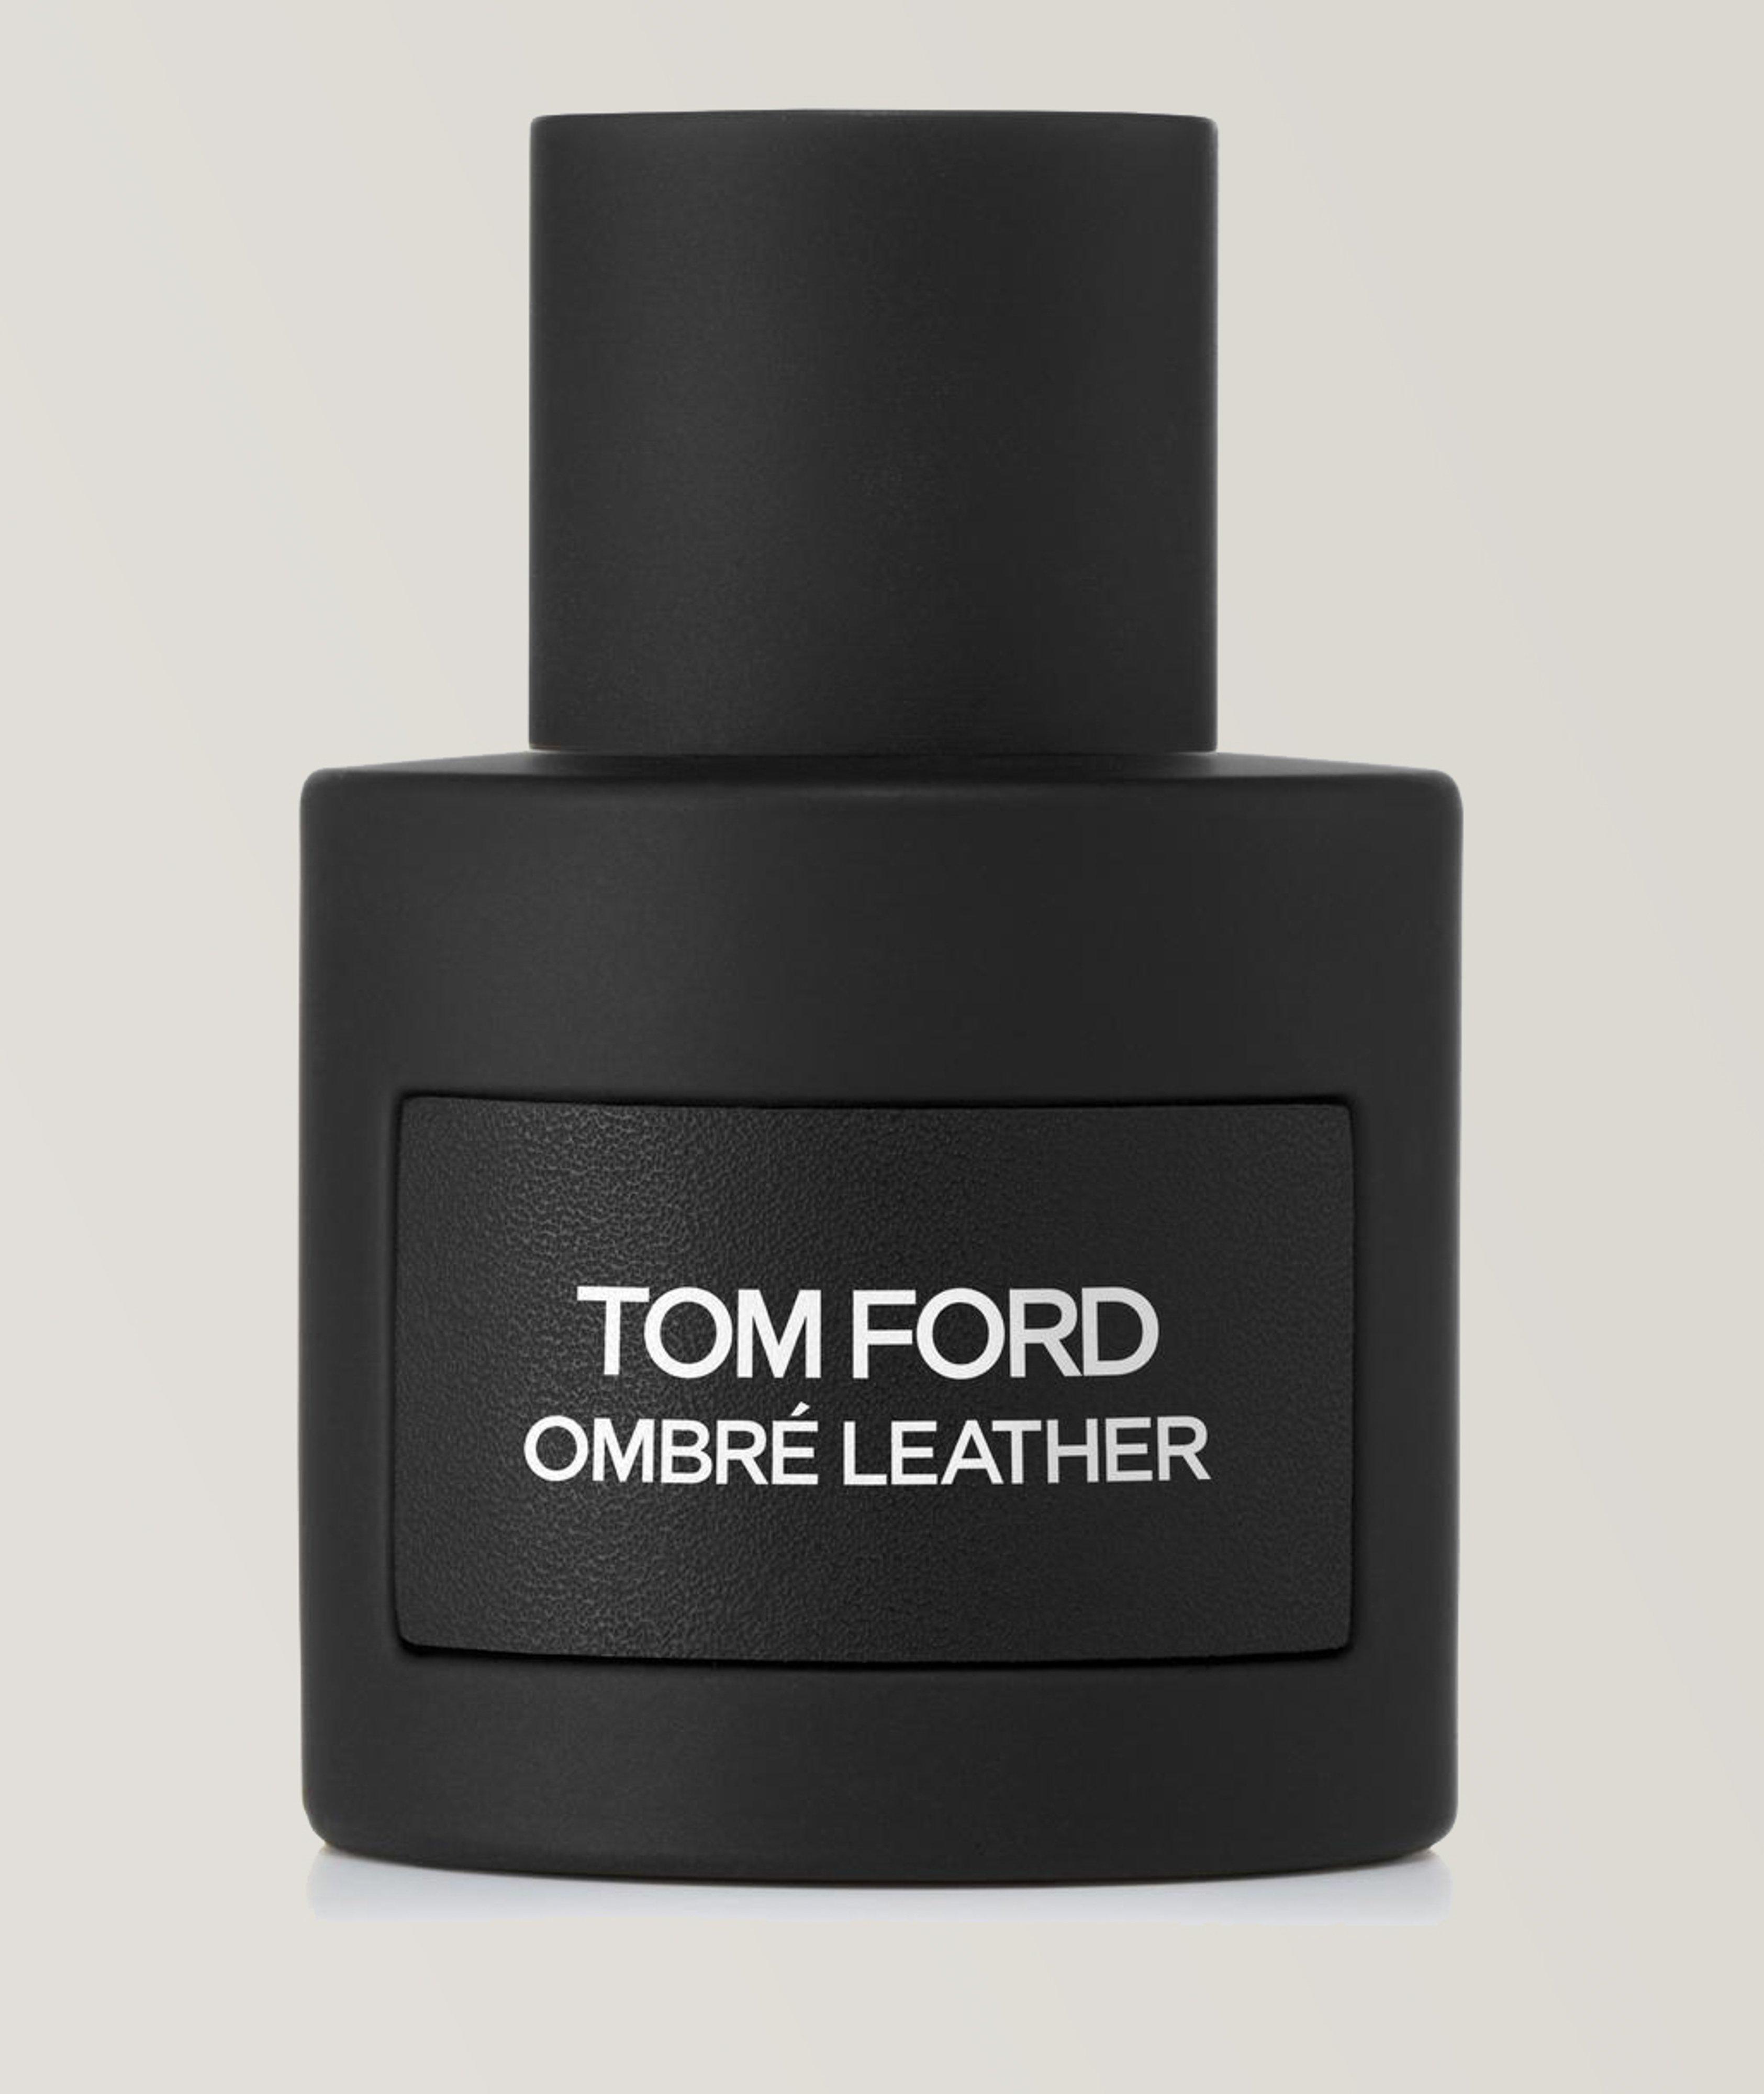 Ombre Leather Eau De Parfum 50ml